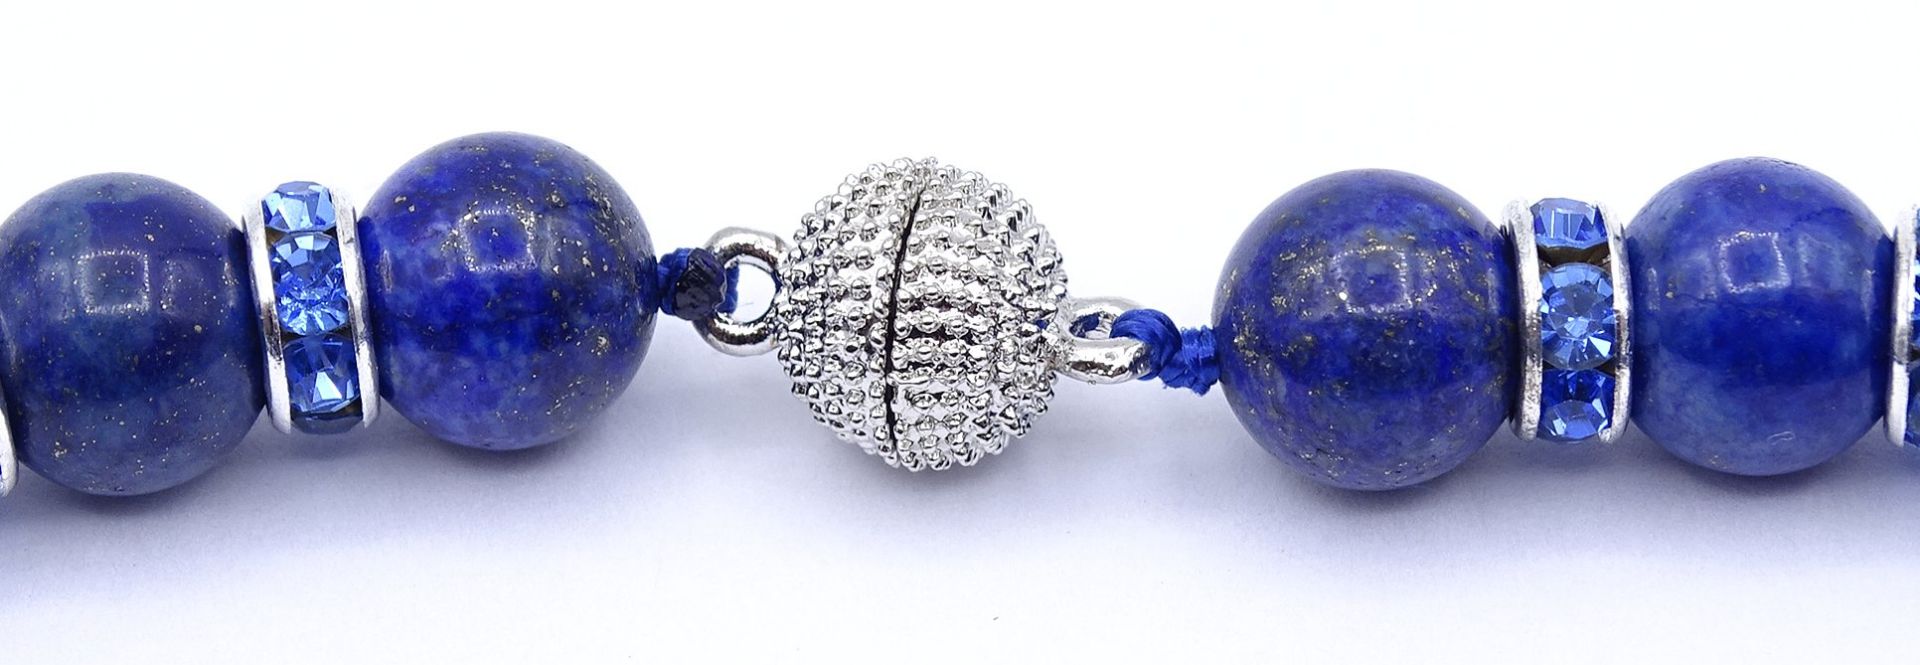 Lapislazuli Halskette mit Magnetverschluss, blaue Glas Zwischenelemente, L. 47cm, 80,5g. - Image 2 of 4